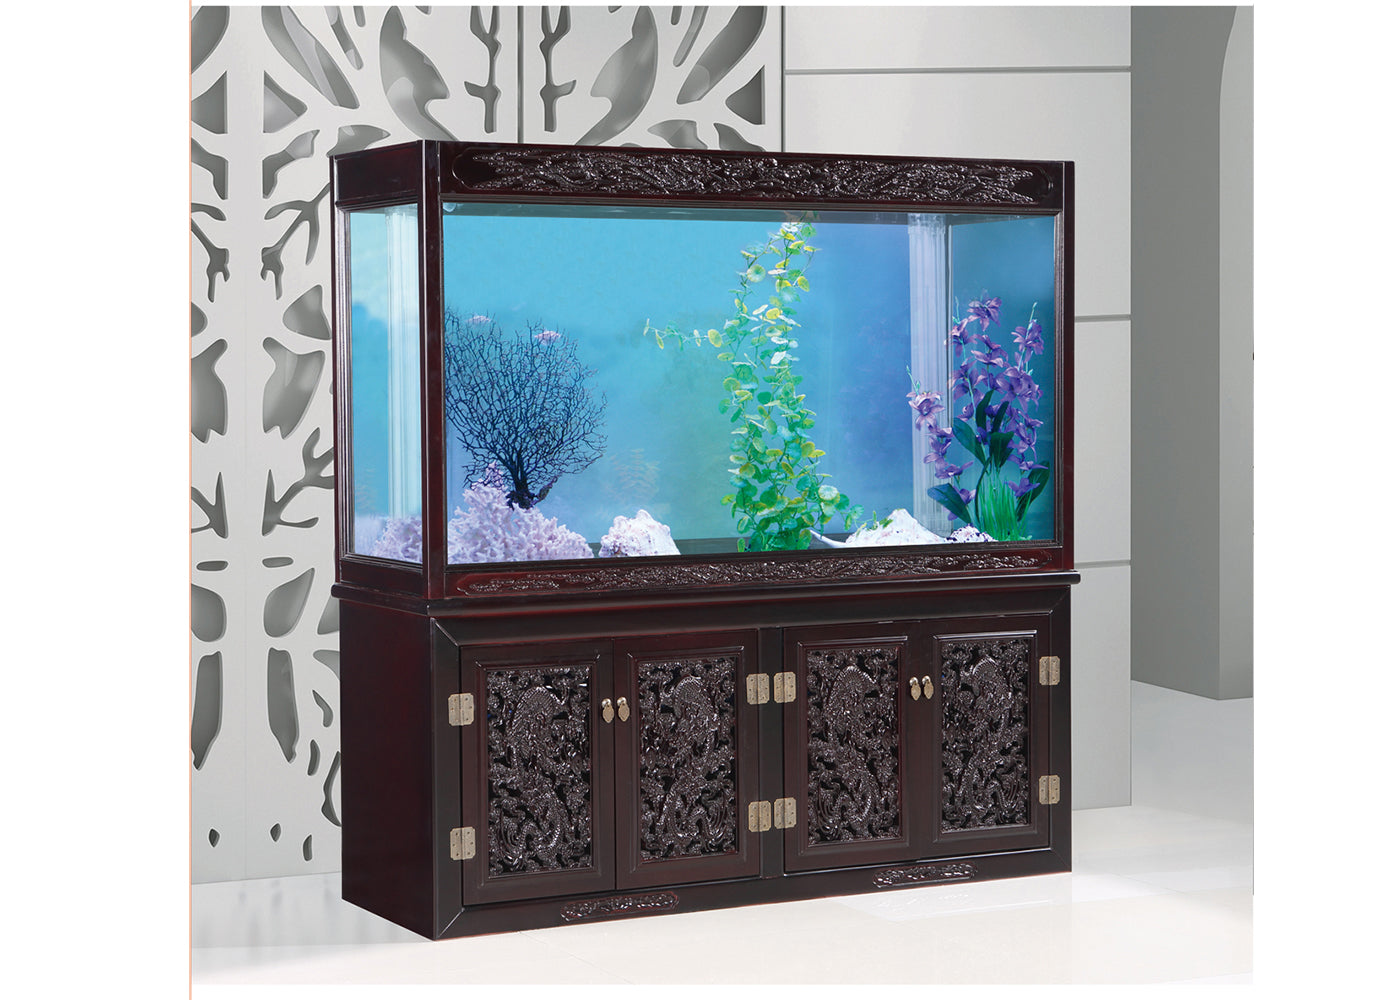 Oceanson V21 - T176 - 176cm x 50cm x 102cm / 78cm Aquarium with Cabinet and Sump